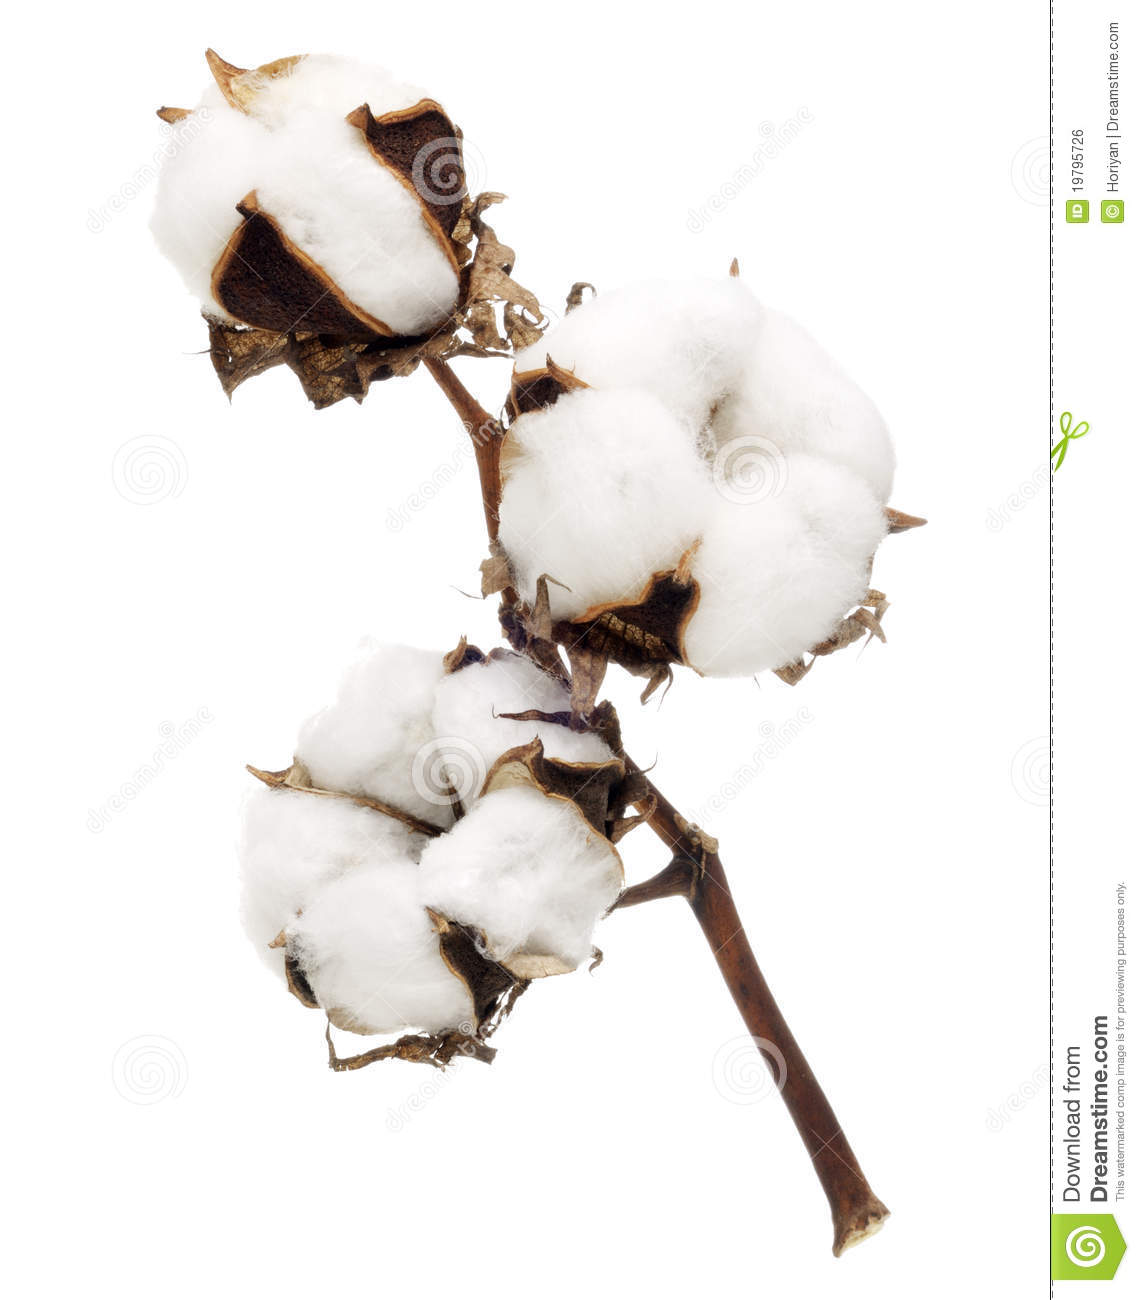 Item-Coton fleur-de-coton-19795726.jpg